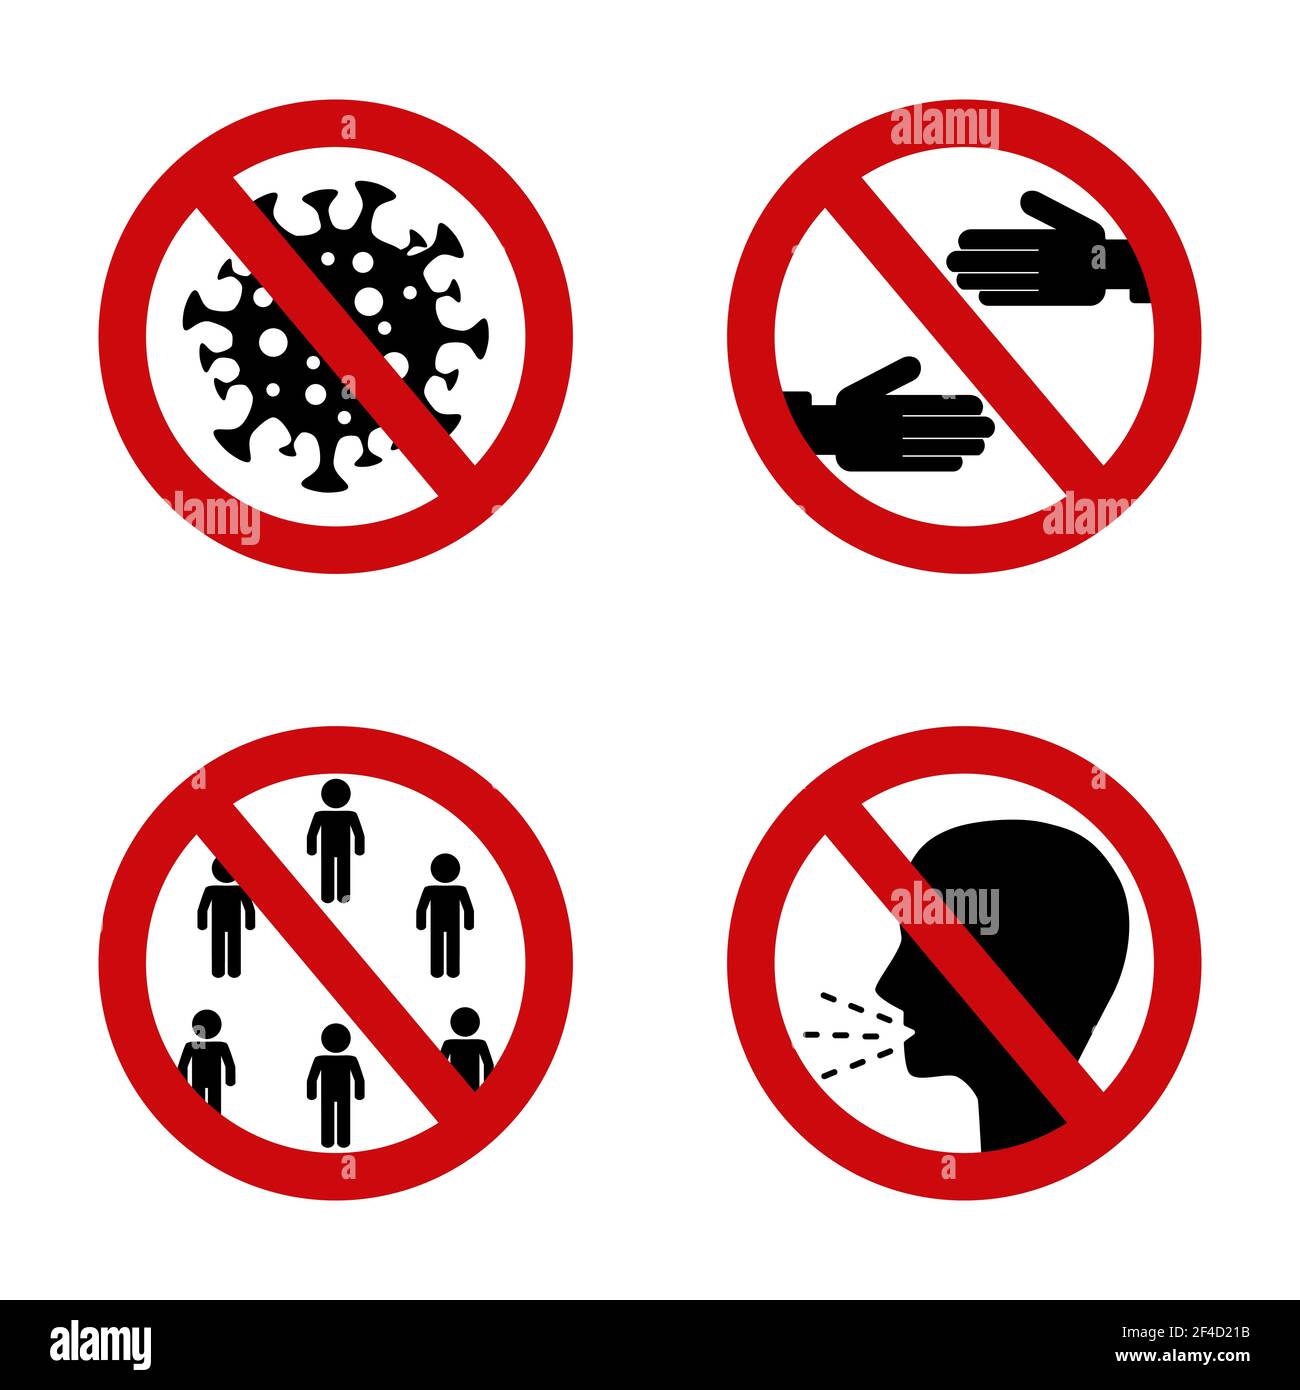 Stop coronavirus segno rosso. Segno di divieto di infezione da virus Corona. Icona proibita senza stretta di mano, tosse e luoghi pubblici Illustrazione Vettoriale